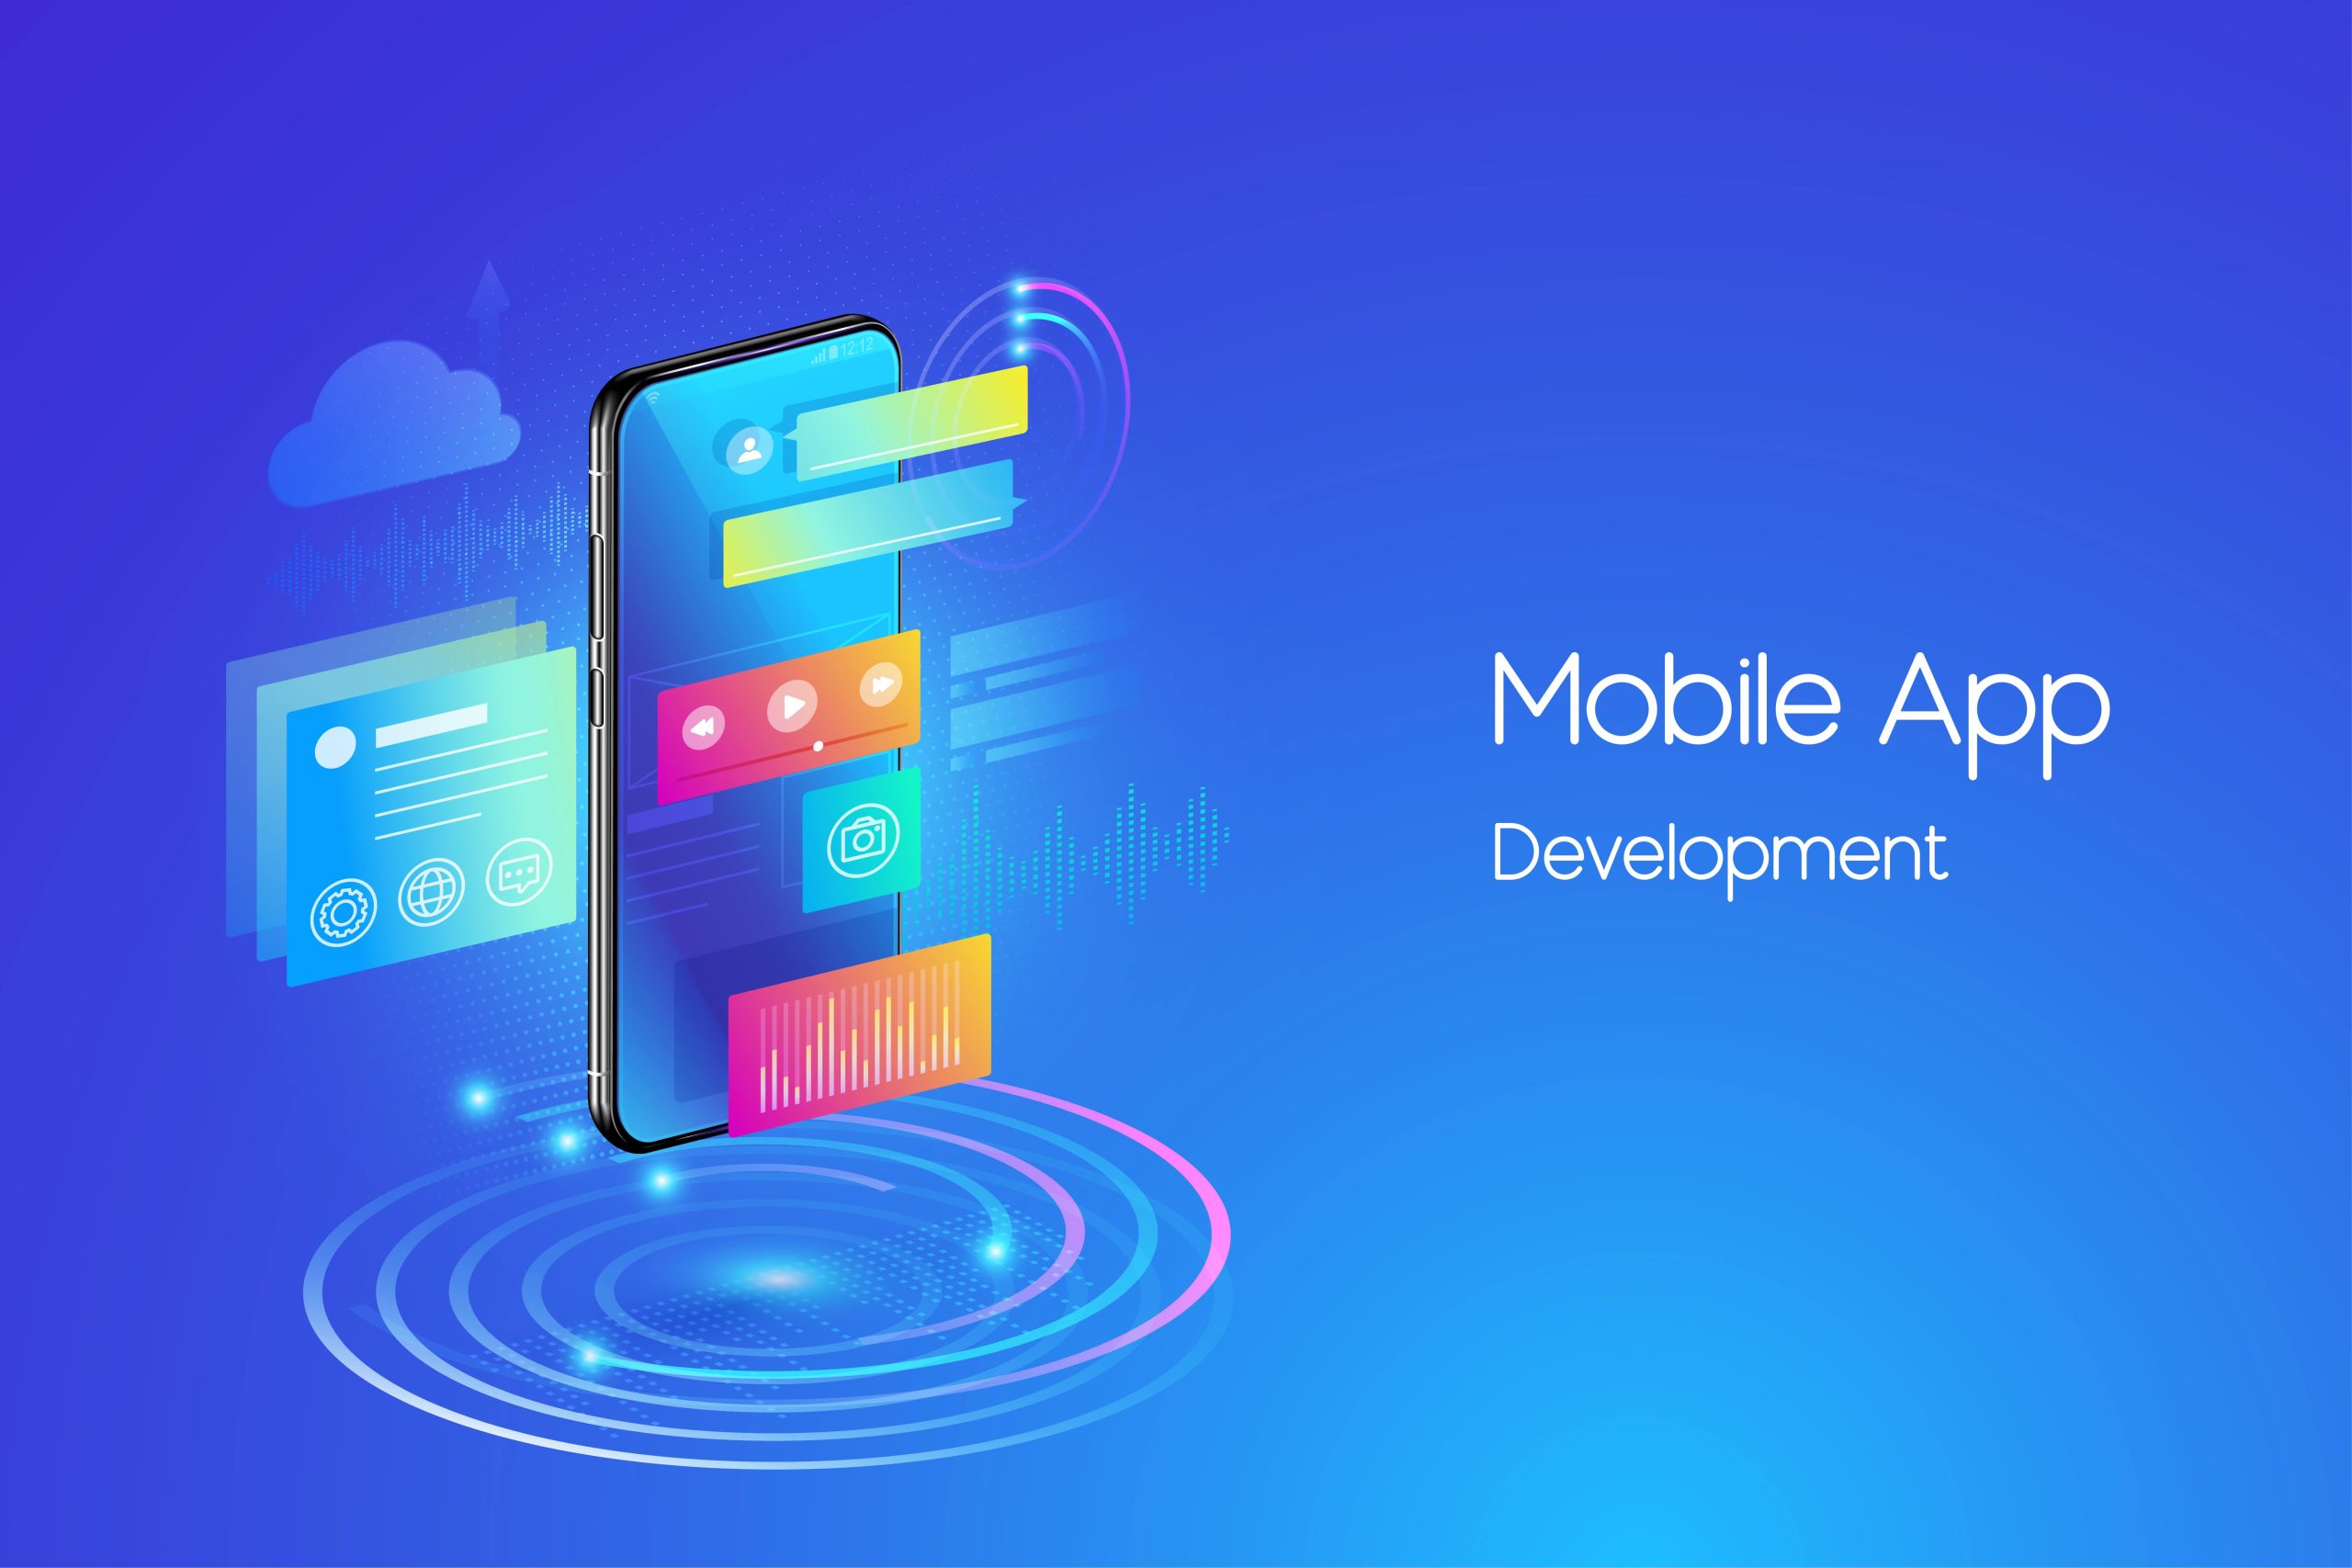 Software Development Kit for Mobile App Development